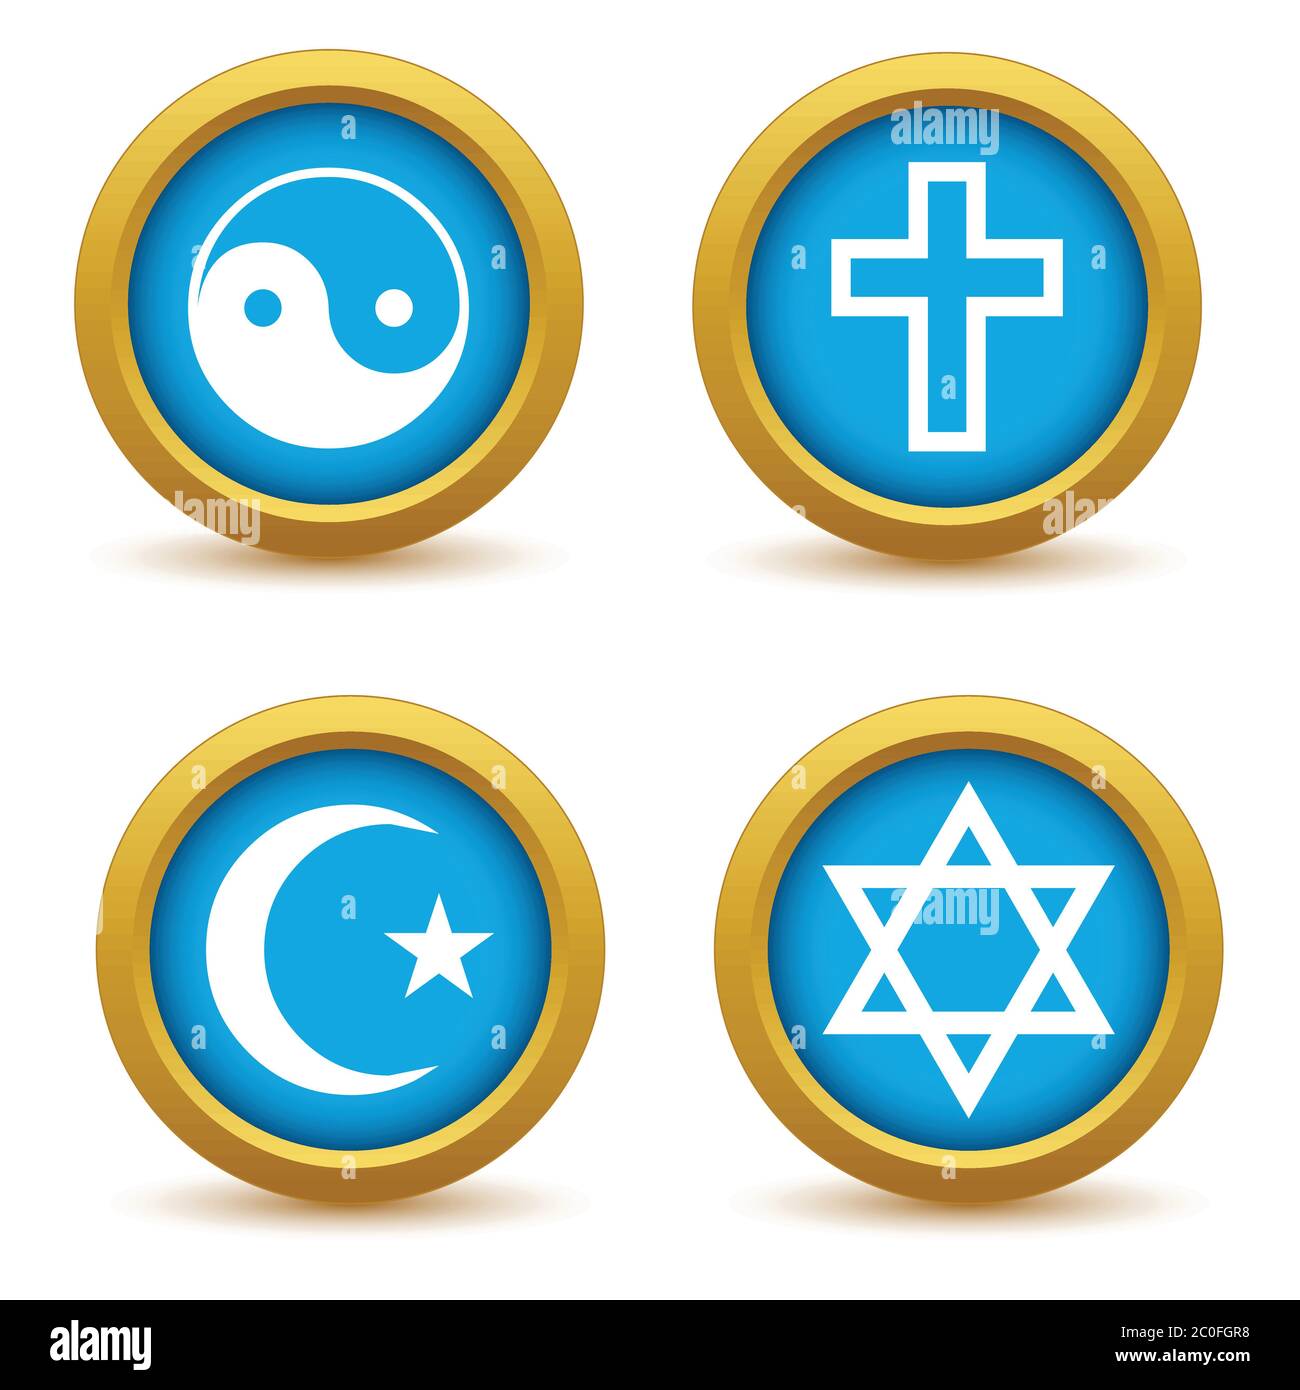 Religious symbols icon set Stock Photo